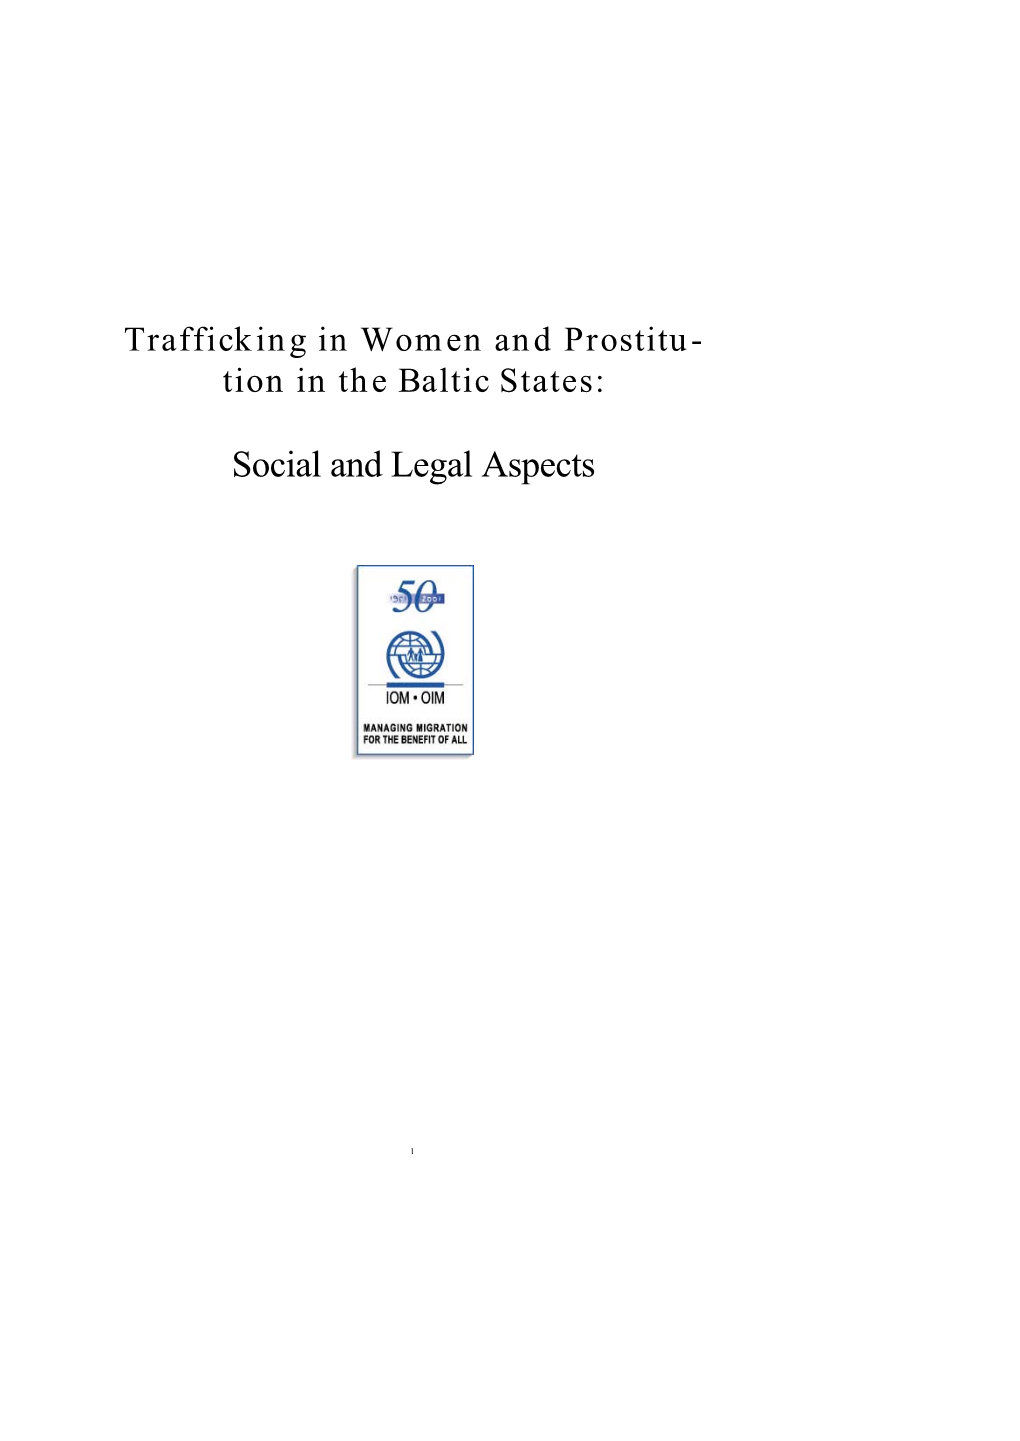 Trafficking Book